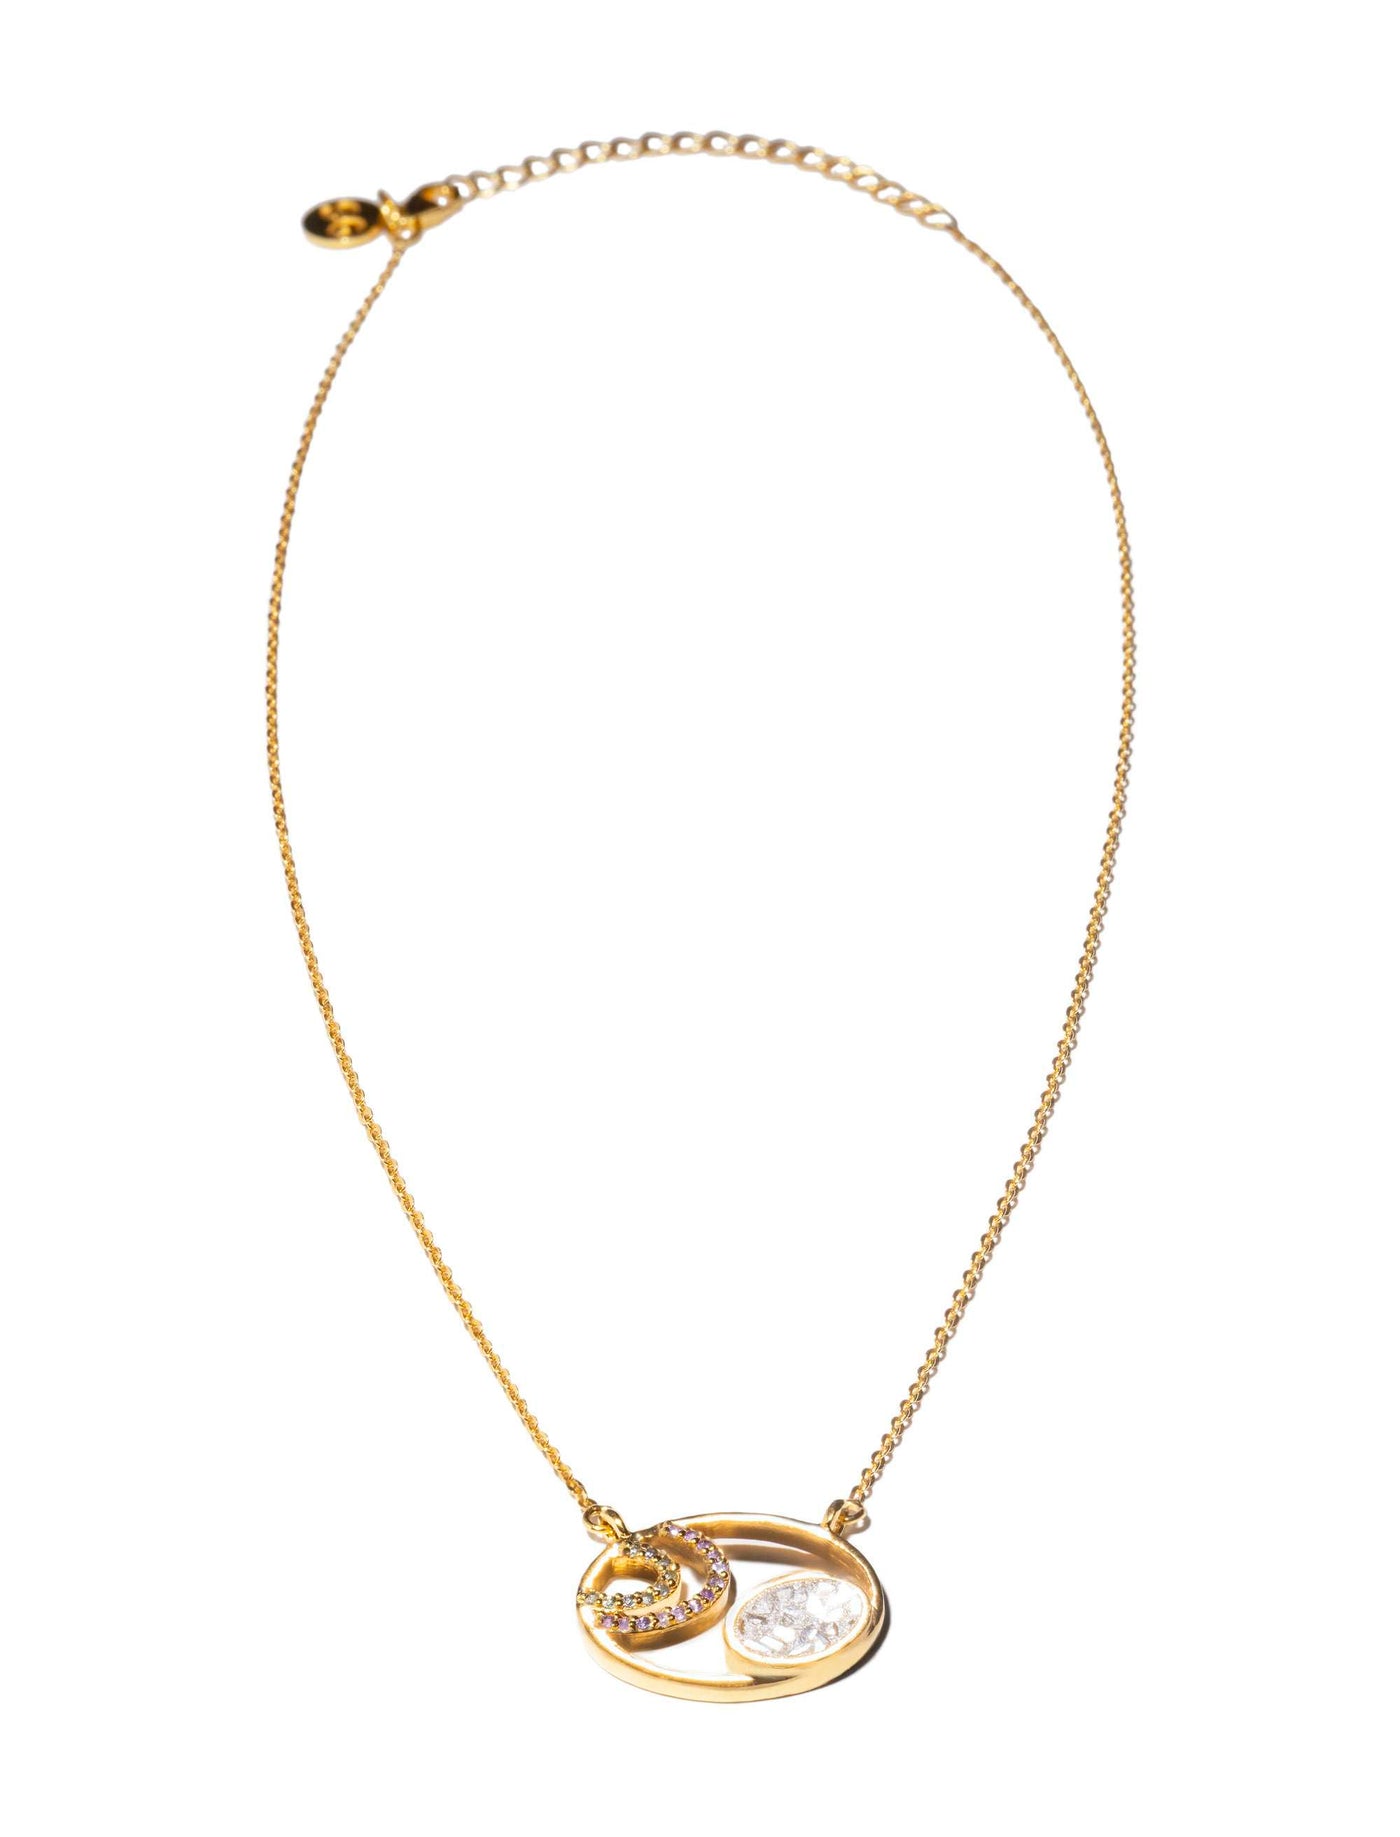 Ohie Gold Vermeil Pendant Necklace